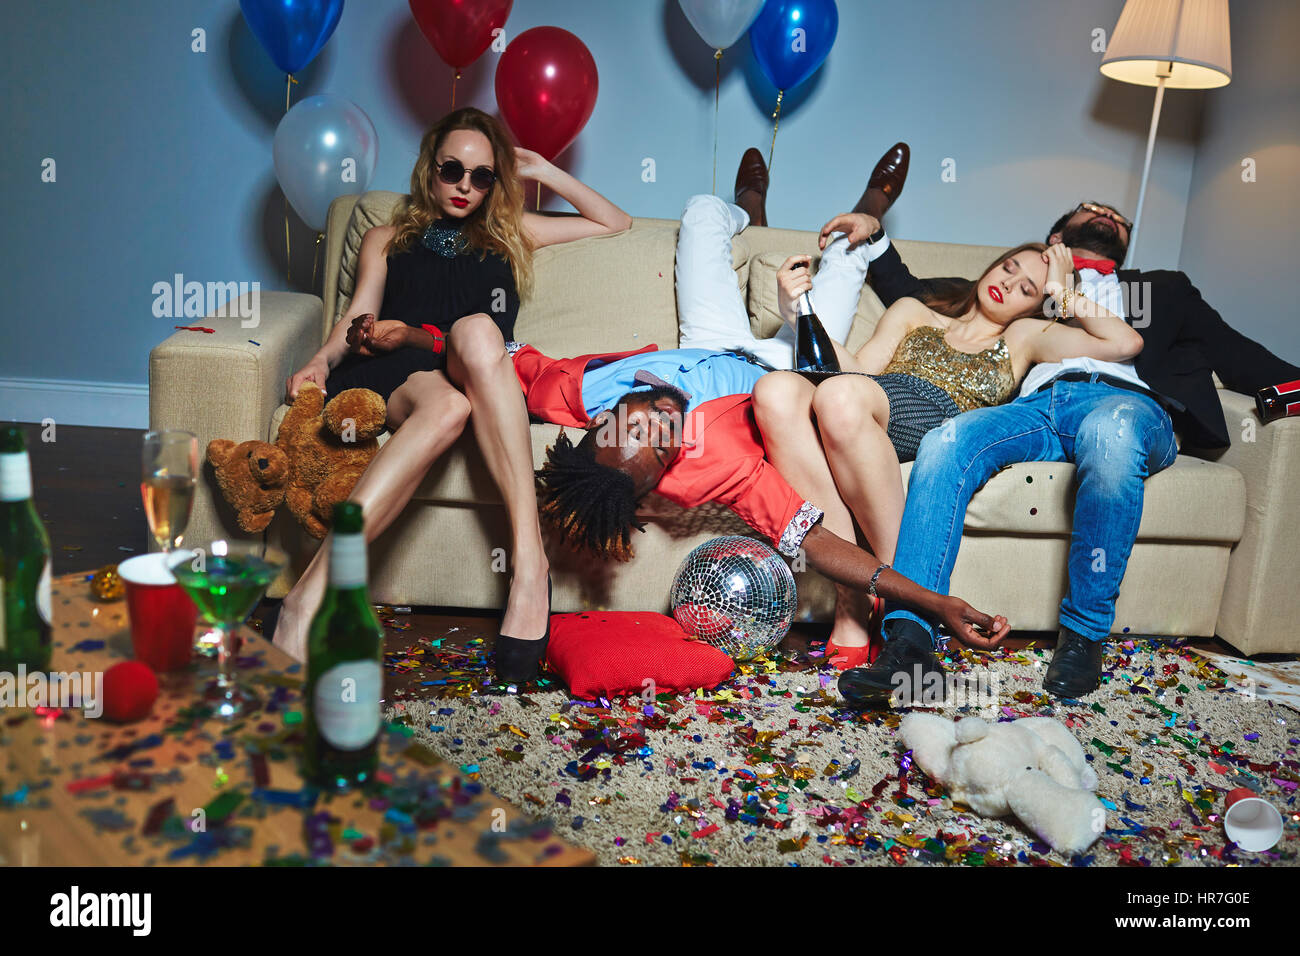 Unordentlicher Raum nach wilde Hausparty, tragen drei beschwipst stilvolle Freunde entspannend auf Couch während der blonden Frau mit Teddy posiert für Fotografie Stockfoto